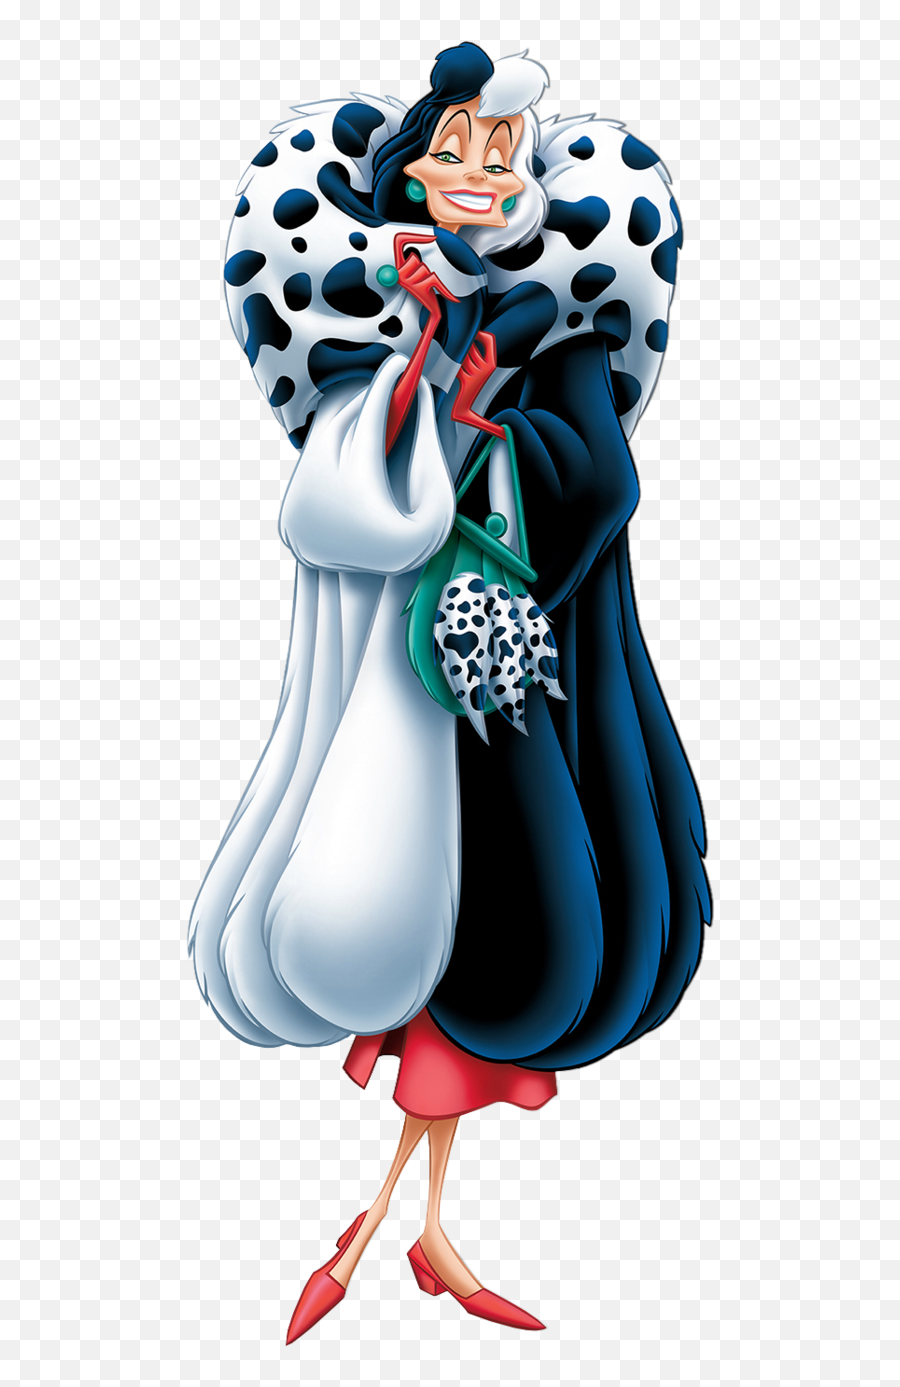 Cruella De Vil Disney Villains Clipart - Cruella De Vil 101 Dalmatians Cartoon Emoji,Disney Emoji Blitz Villains